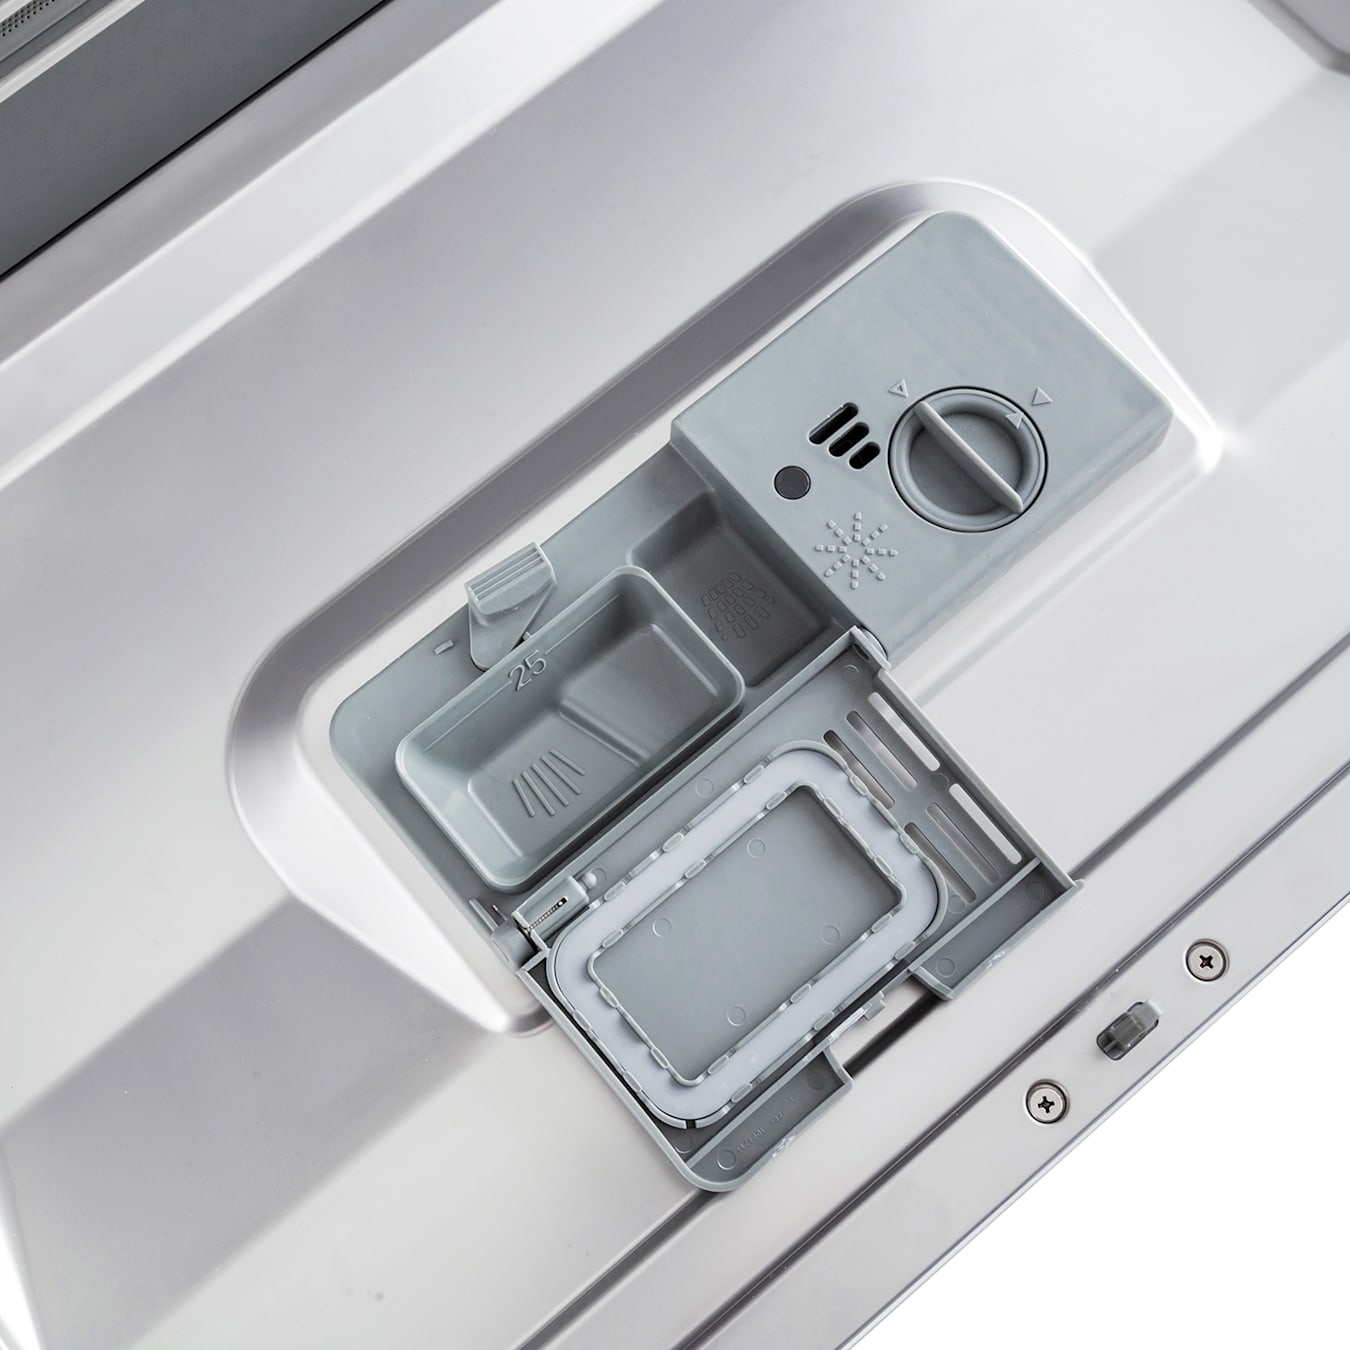 Cómo instalar un lavavajillas integrable de cualquier marca posterior a  2015 con un frente integrado?